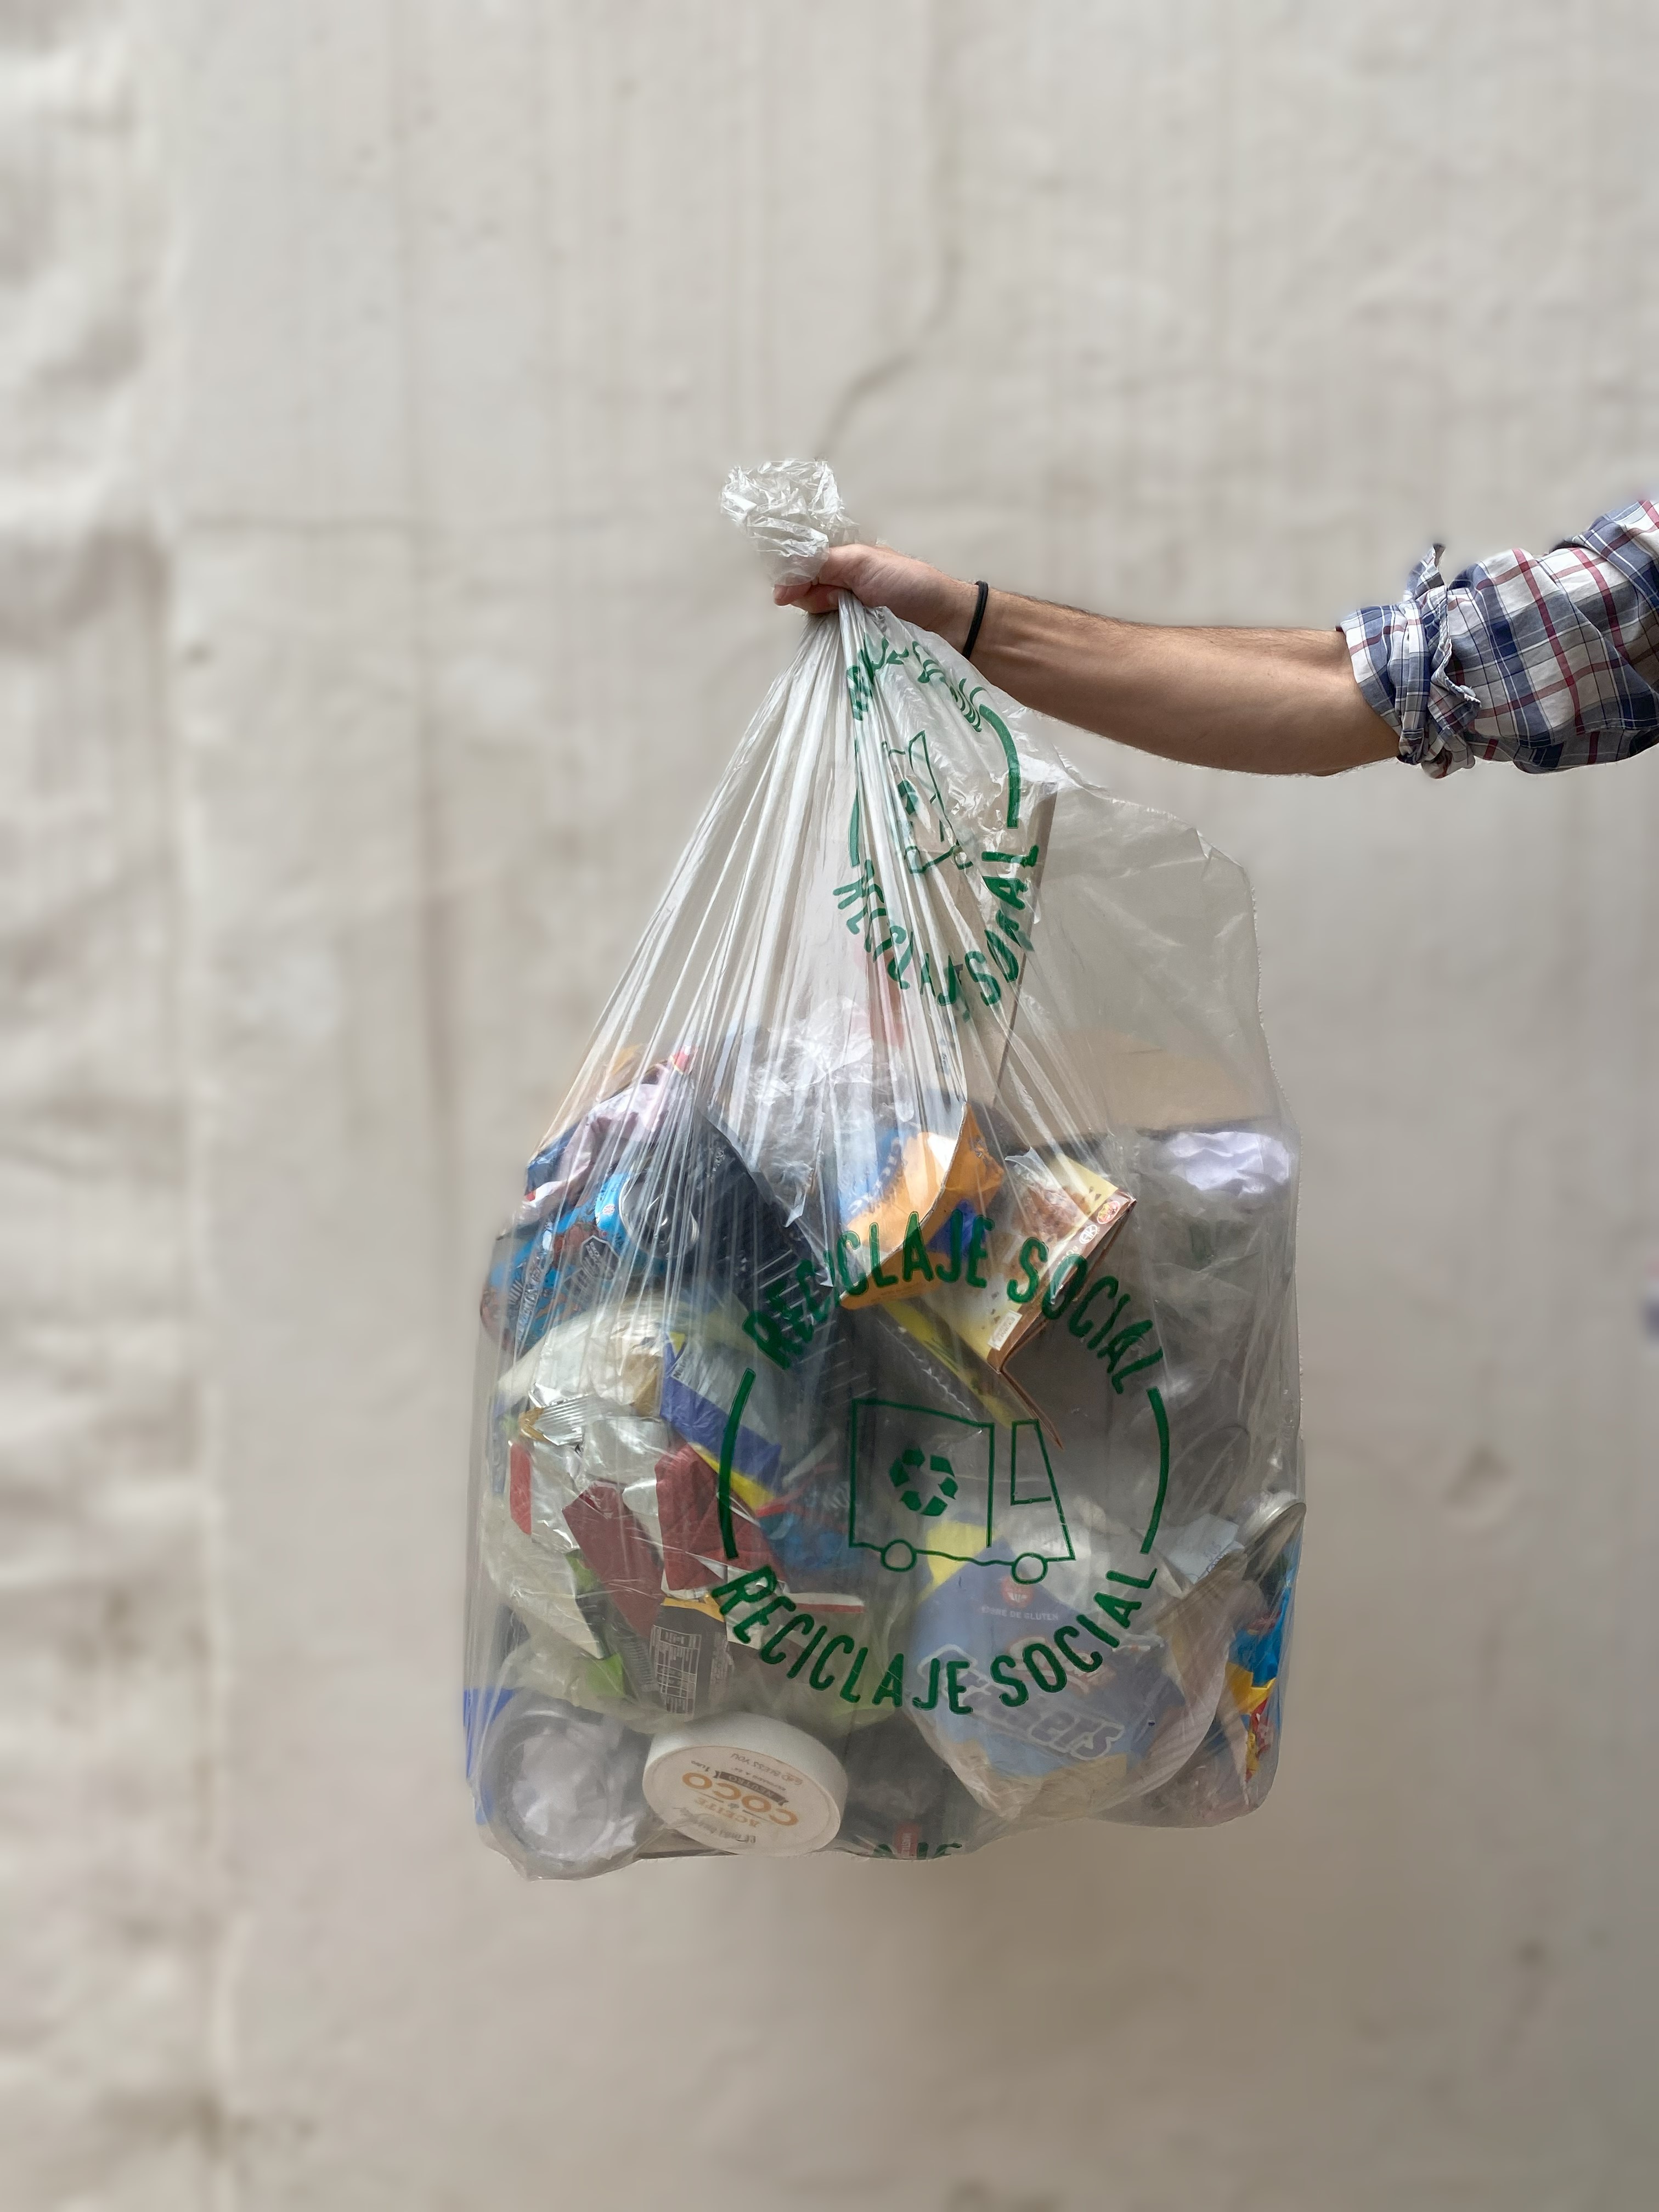 La separación consciente de residuos logra cambios en los hábitos de consumo
 - EcoLink